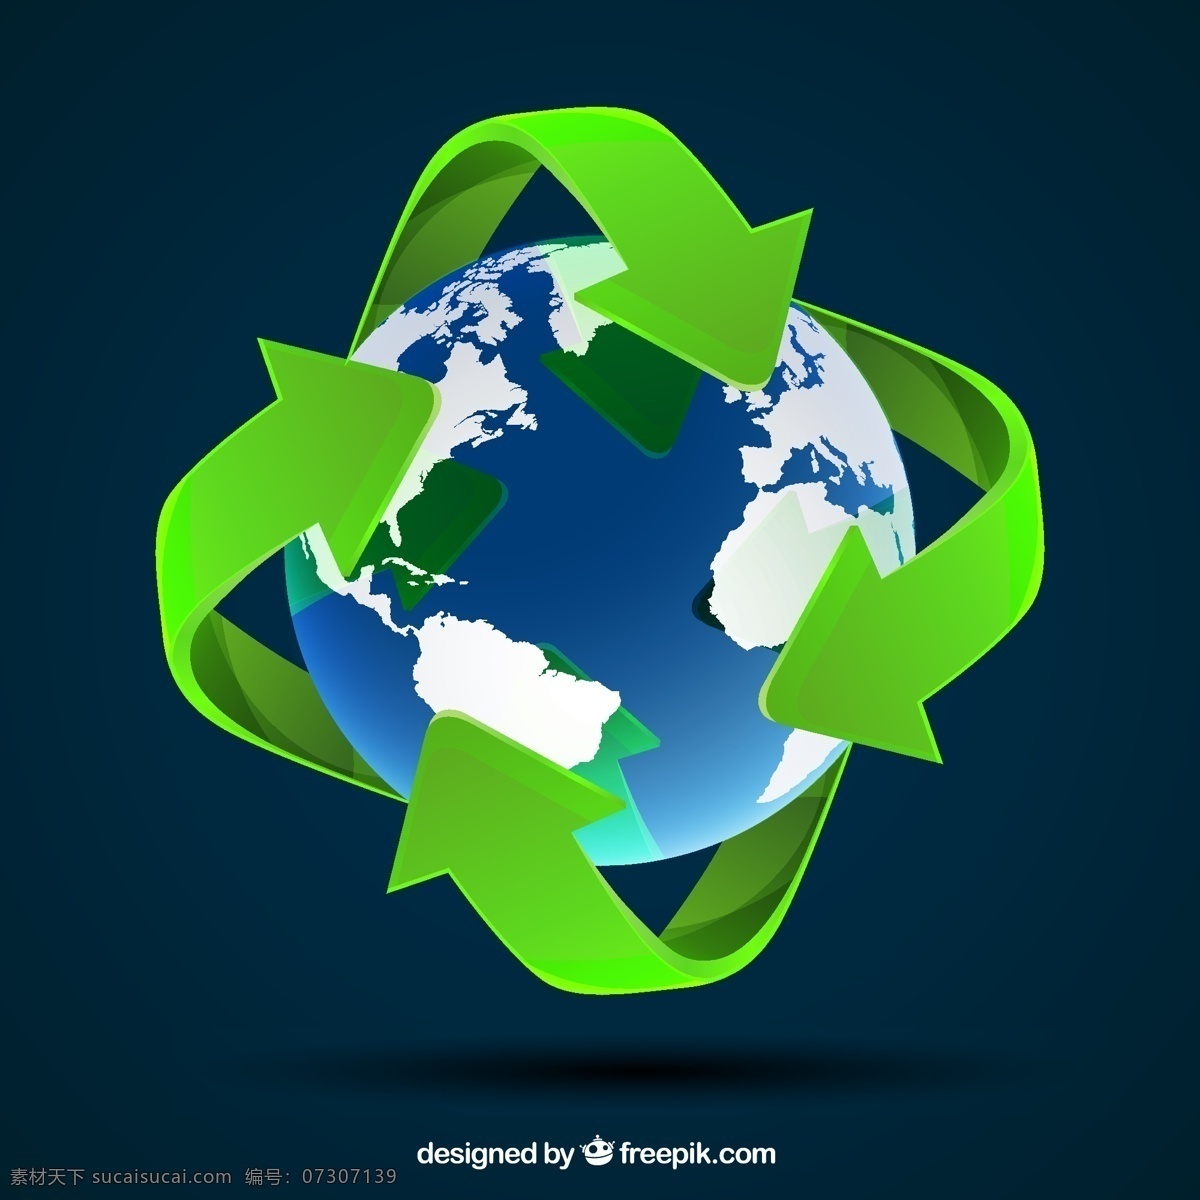 世界地图模板 地图 世界 绿色 地球 世界地图 箭头 生态 循环 环境 全球